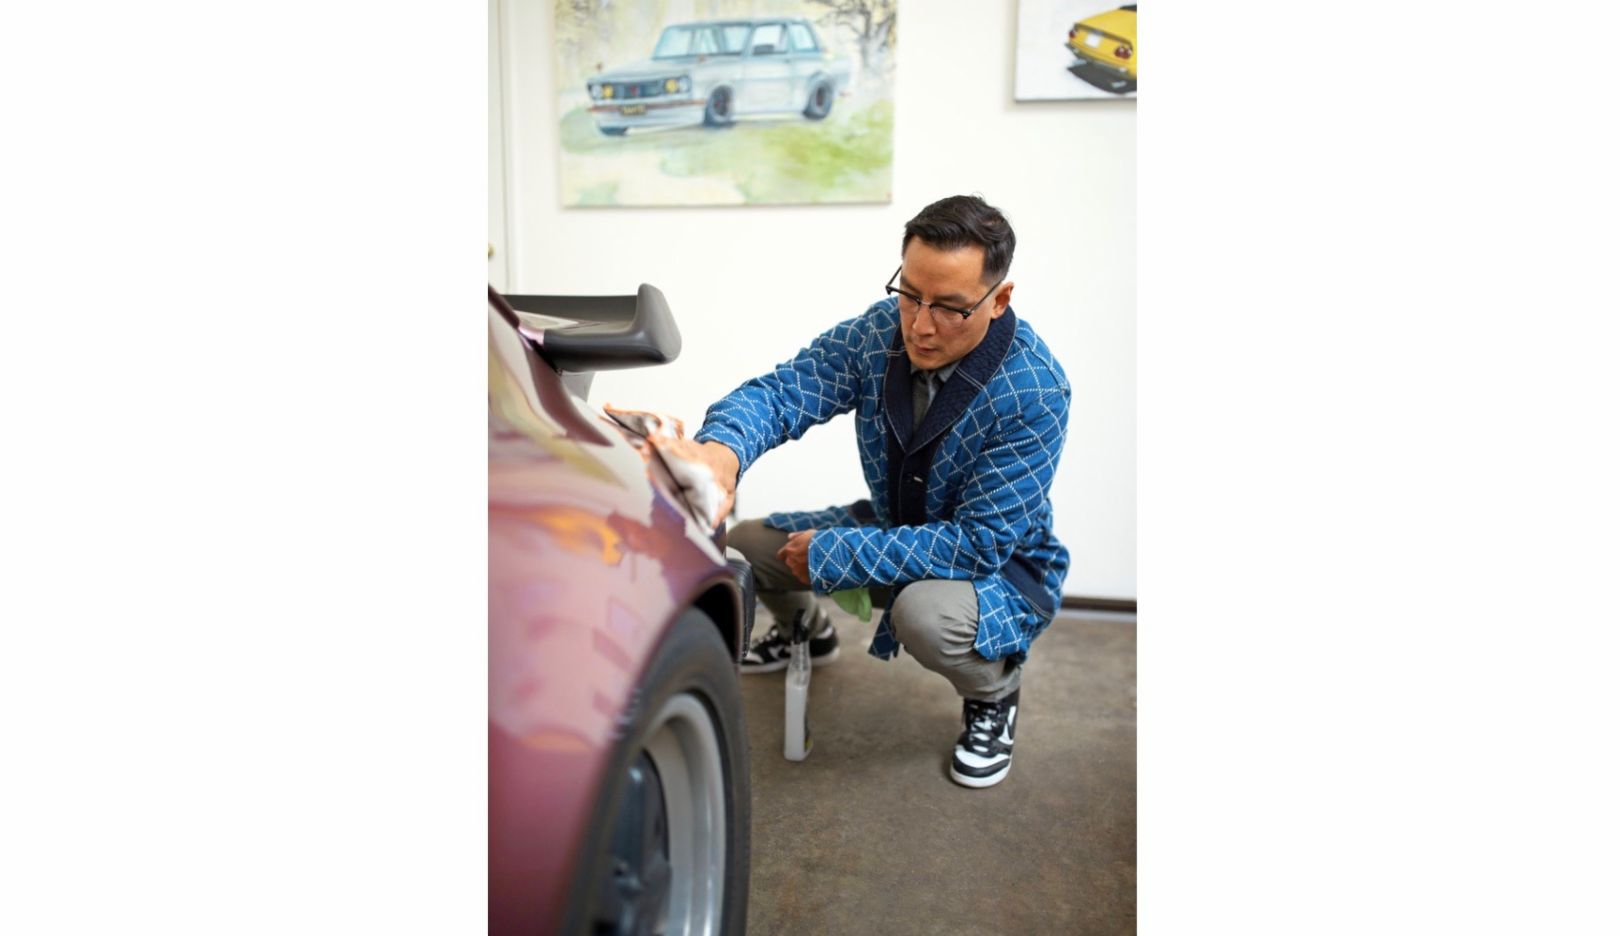 Há dez anos, Daniel Wu assumiu o Porsche 911 de 1988 do pai, de que cuida com carinho desde então. O carro esportivo evoca muitas lembranças entre pai e filho.